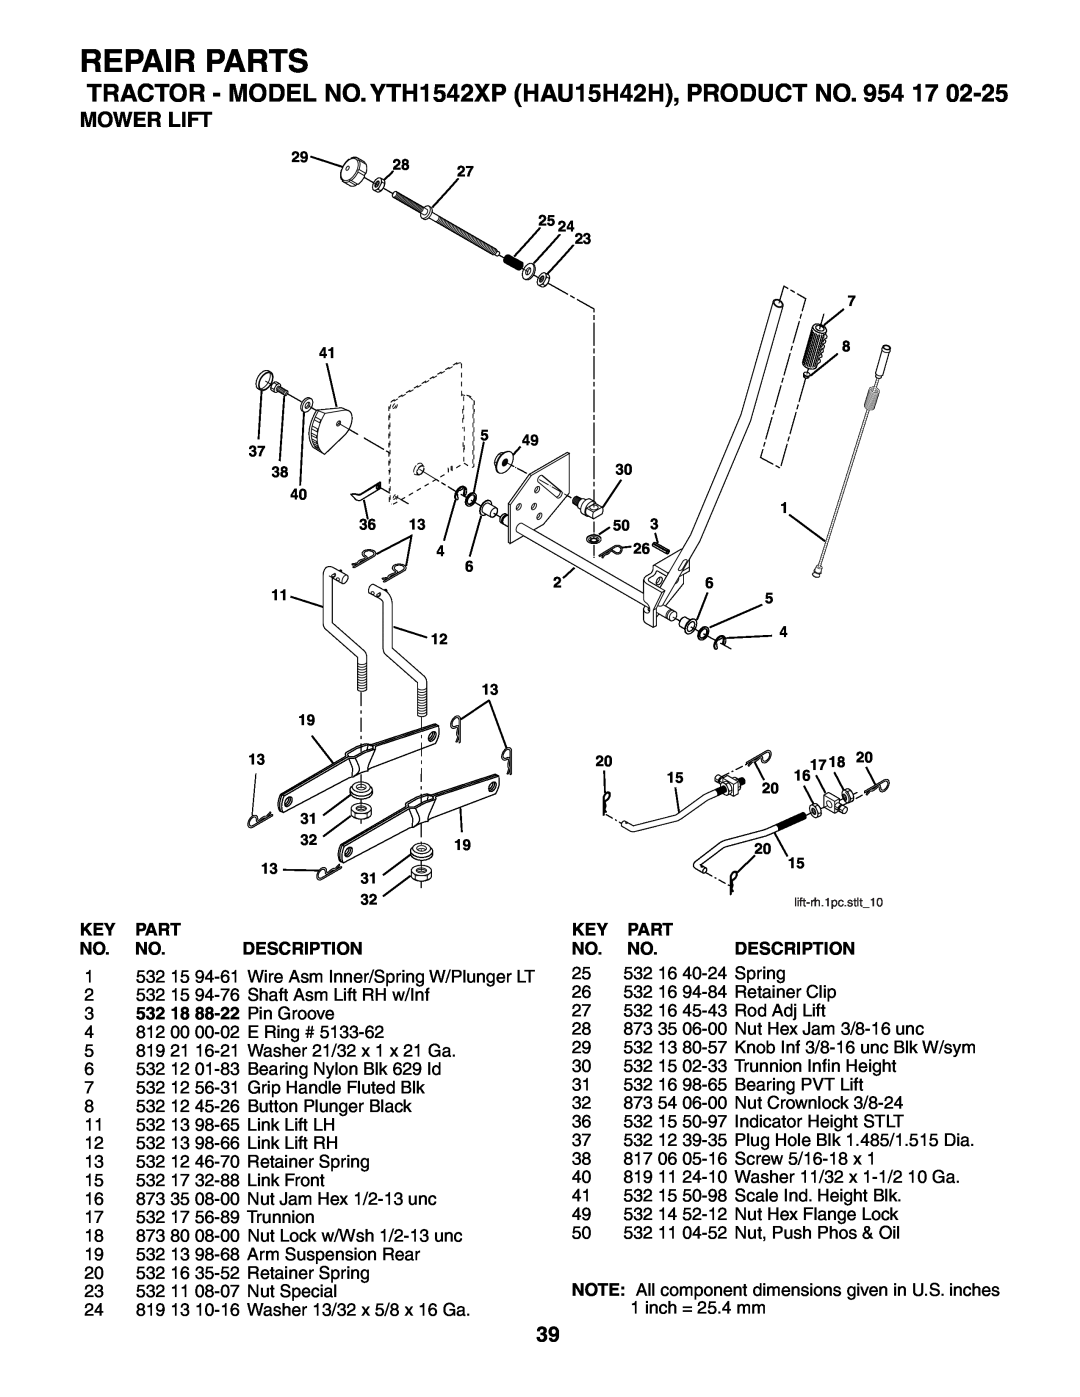 Husqvarna YTH1542XP owner manual Mower Lift, Repair Parts, Key Part No. No. Description, 3532 18 88-22 Pin Groove 